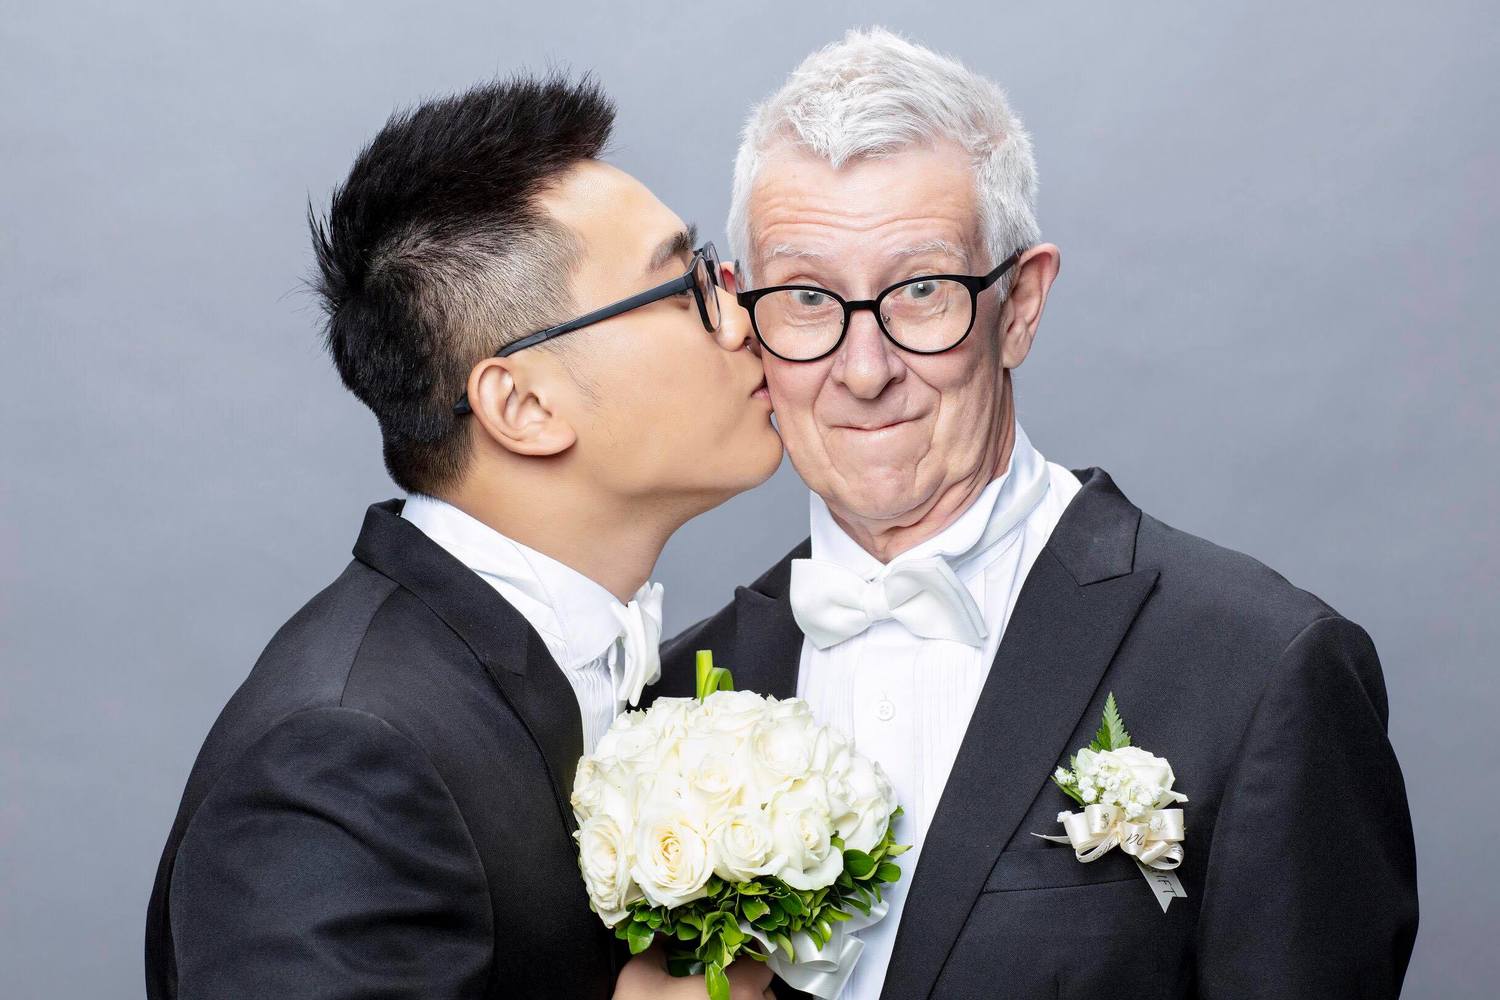 24 歲的苗栗青年趙守泉將要和 75 歲的英國老爹 Andy 在苗栗舉行婚禮，希望網友 16 日能給他們祝福。   圖／趙守泉提供